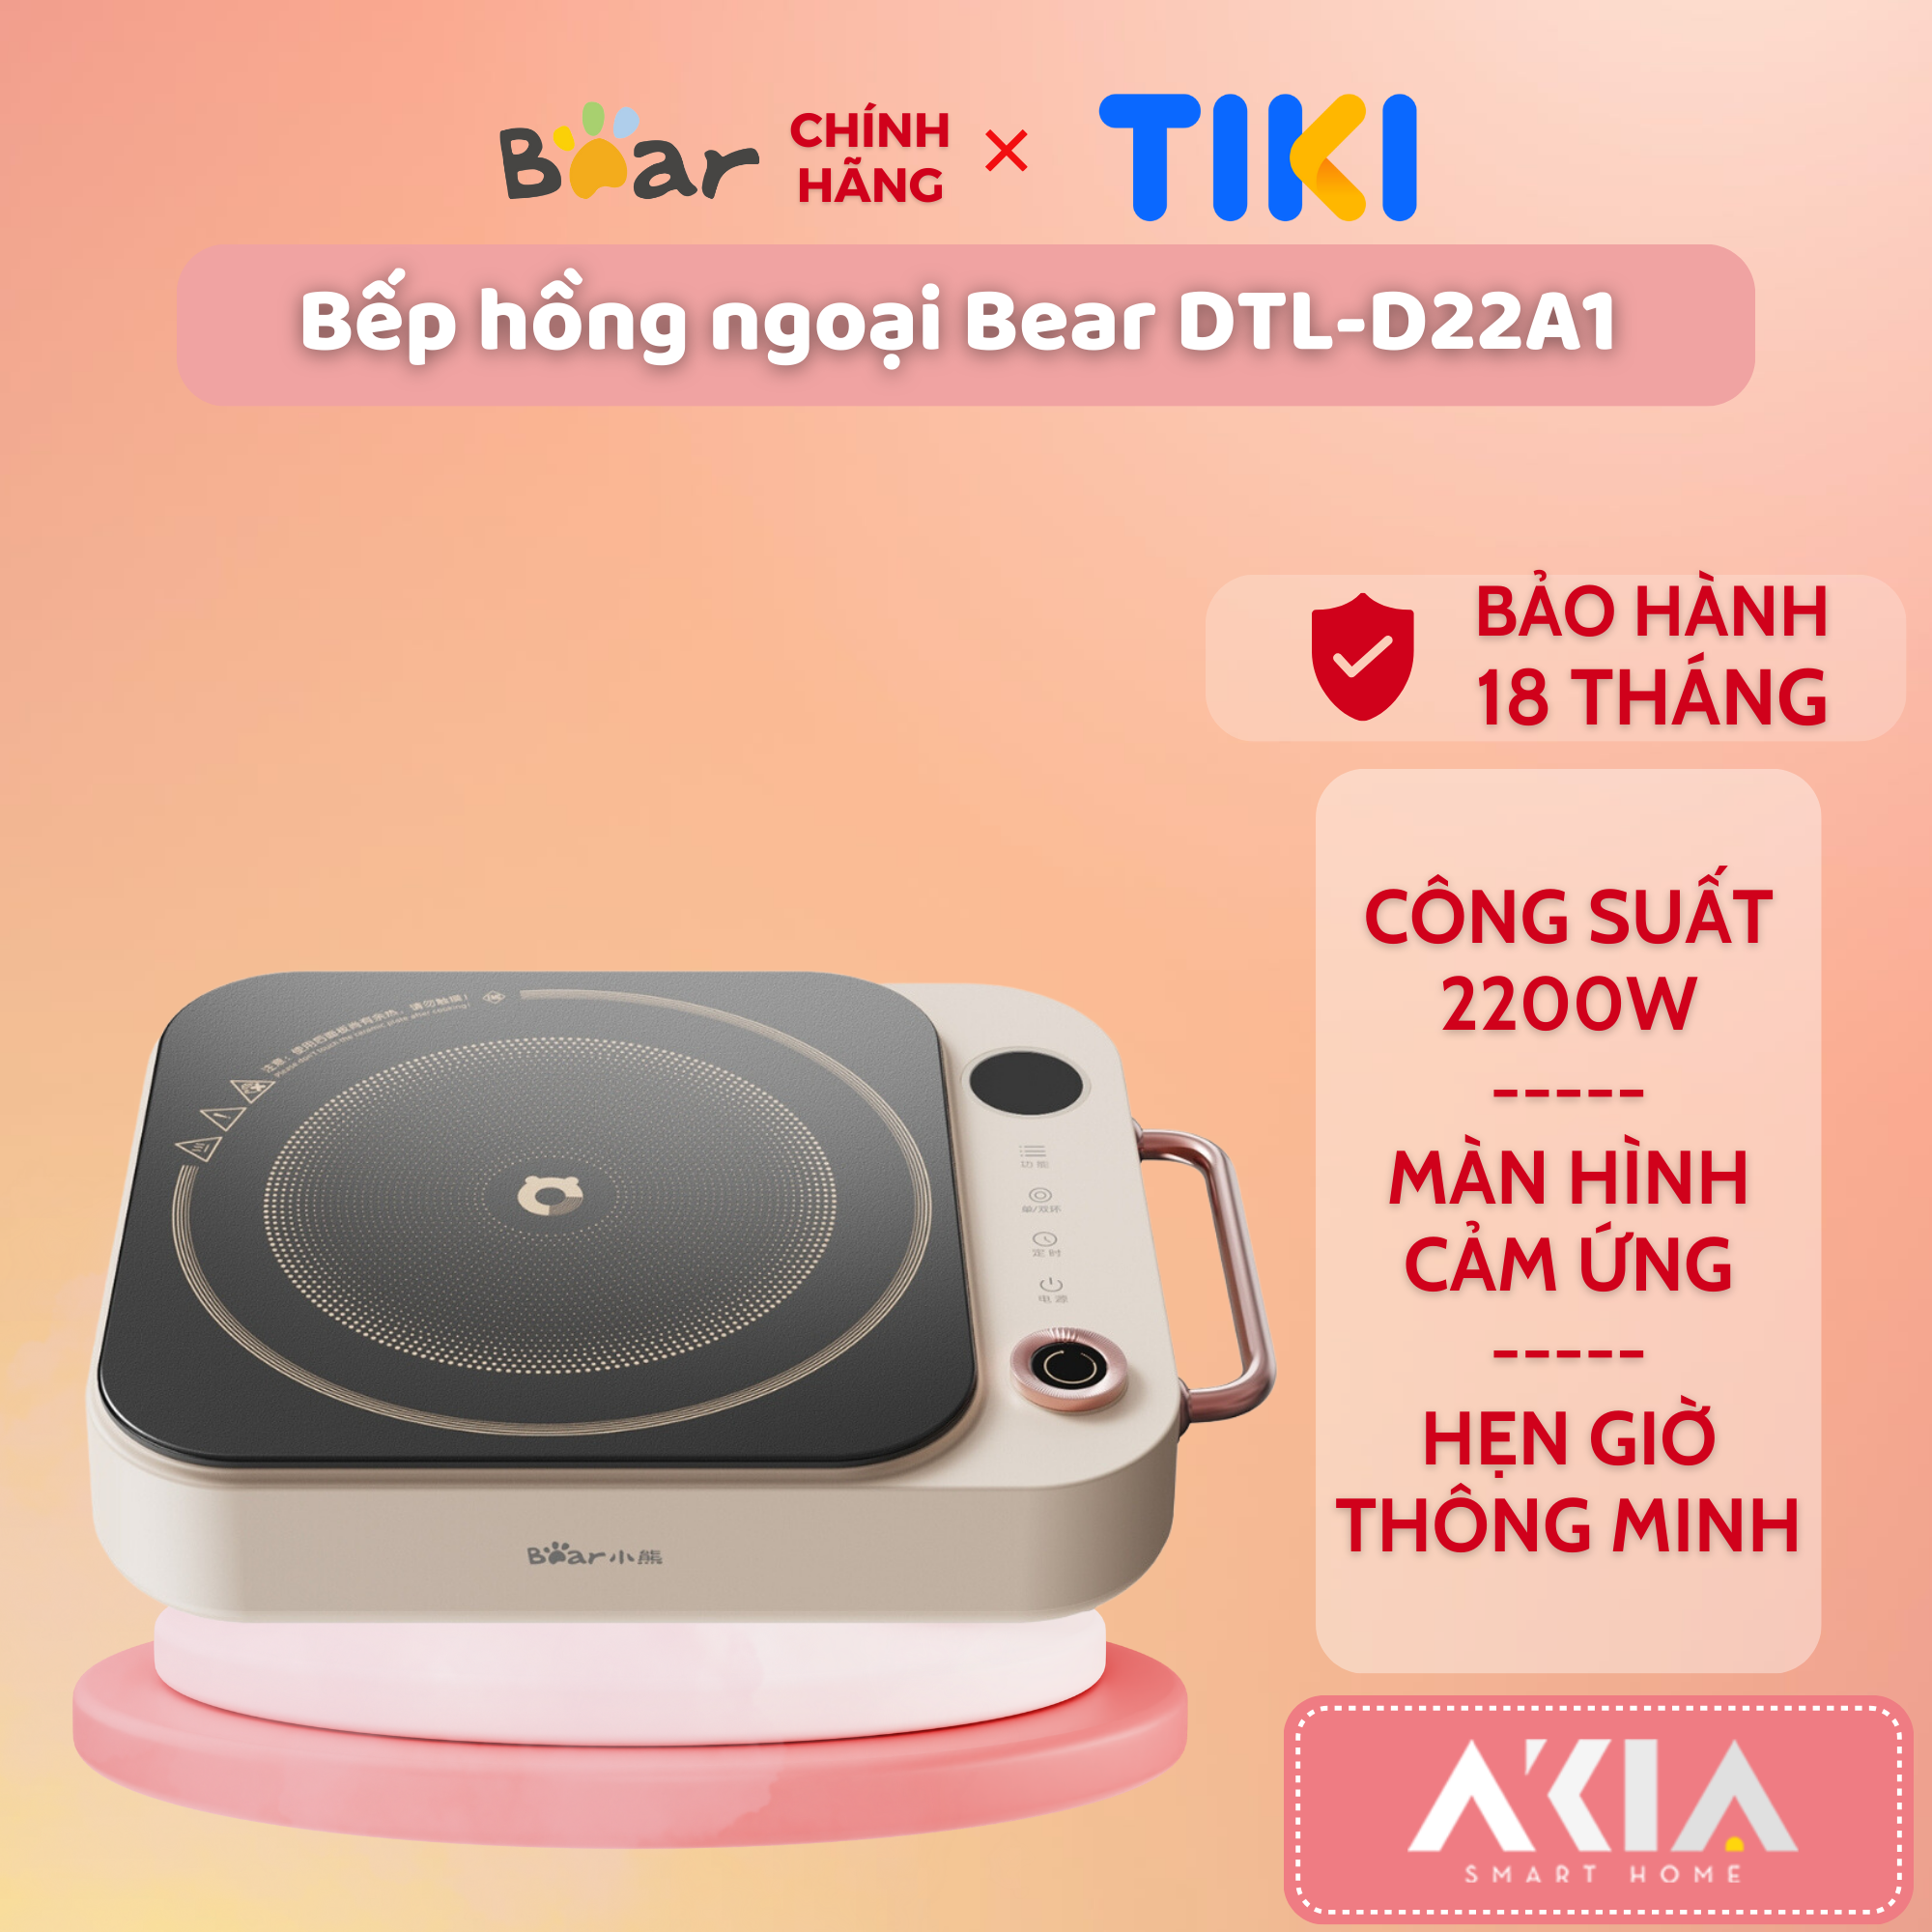 Bếp hồng ngoại Bear DTL-D22A1 - Công suất 2200W, Màn hình hiển thị cảm ứng, Hẹn giờ thông minh - BẢN QUỐC TẾ, HÀNG CHÍNH HÃNG